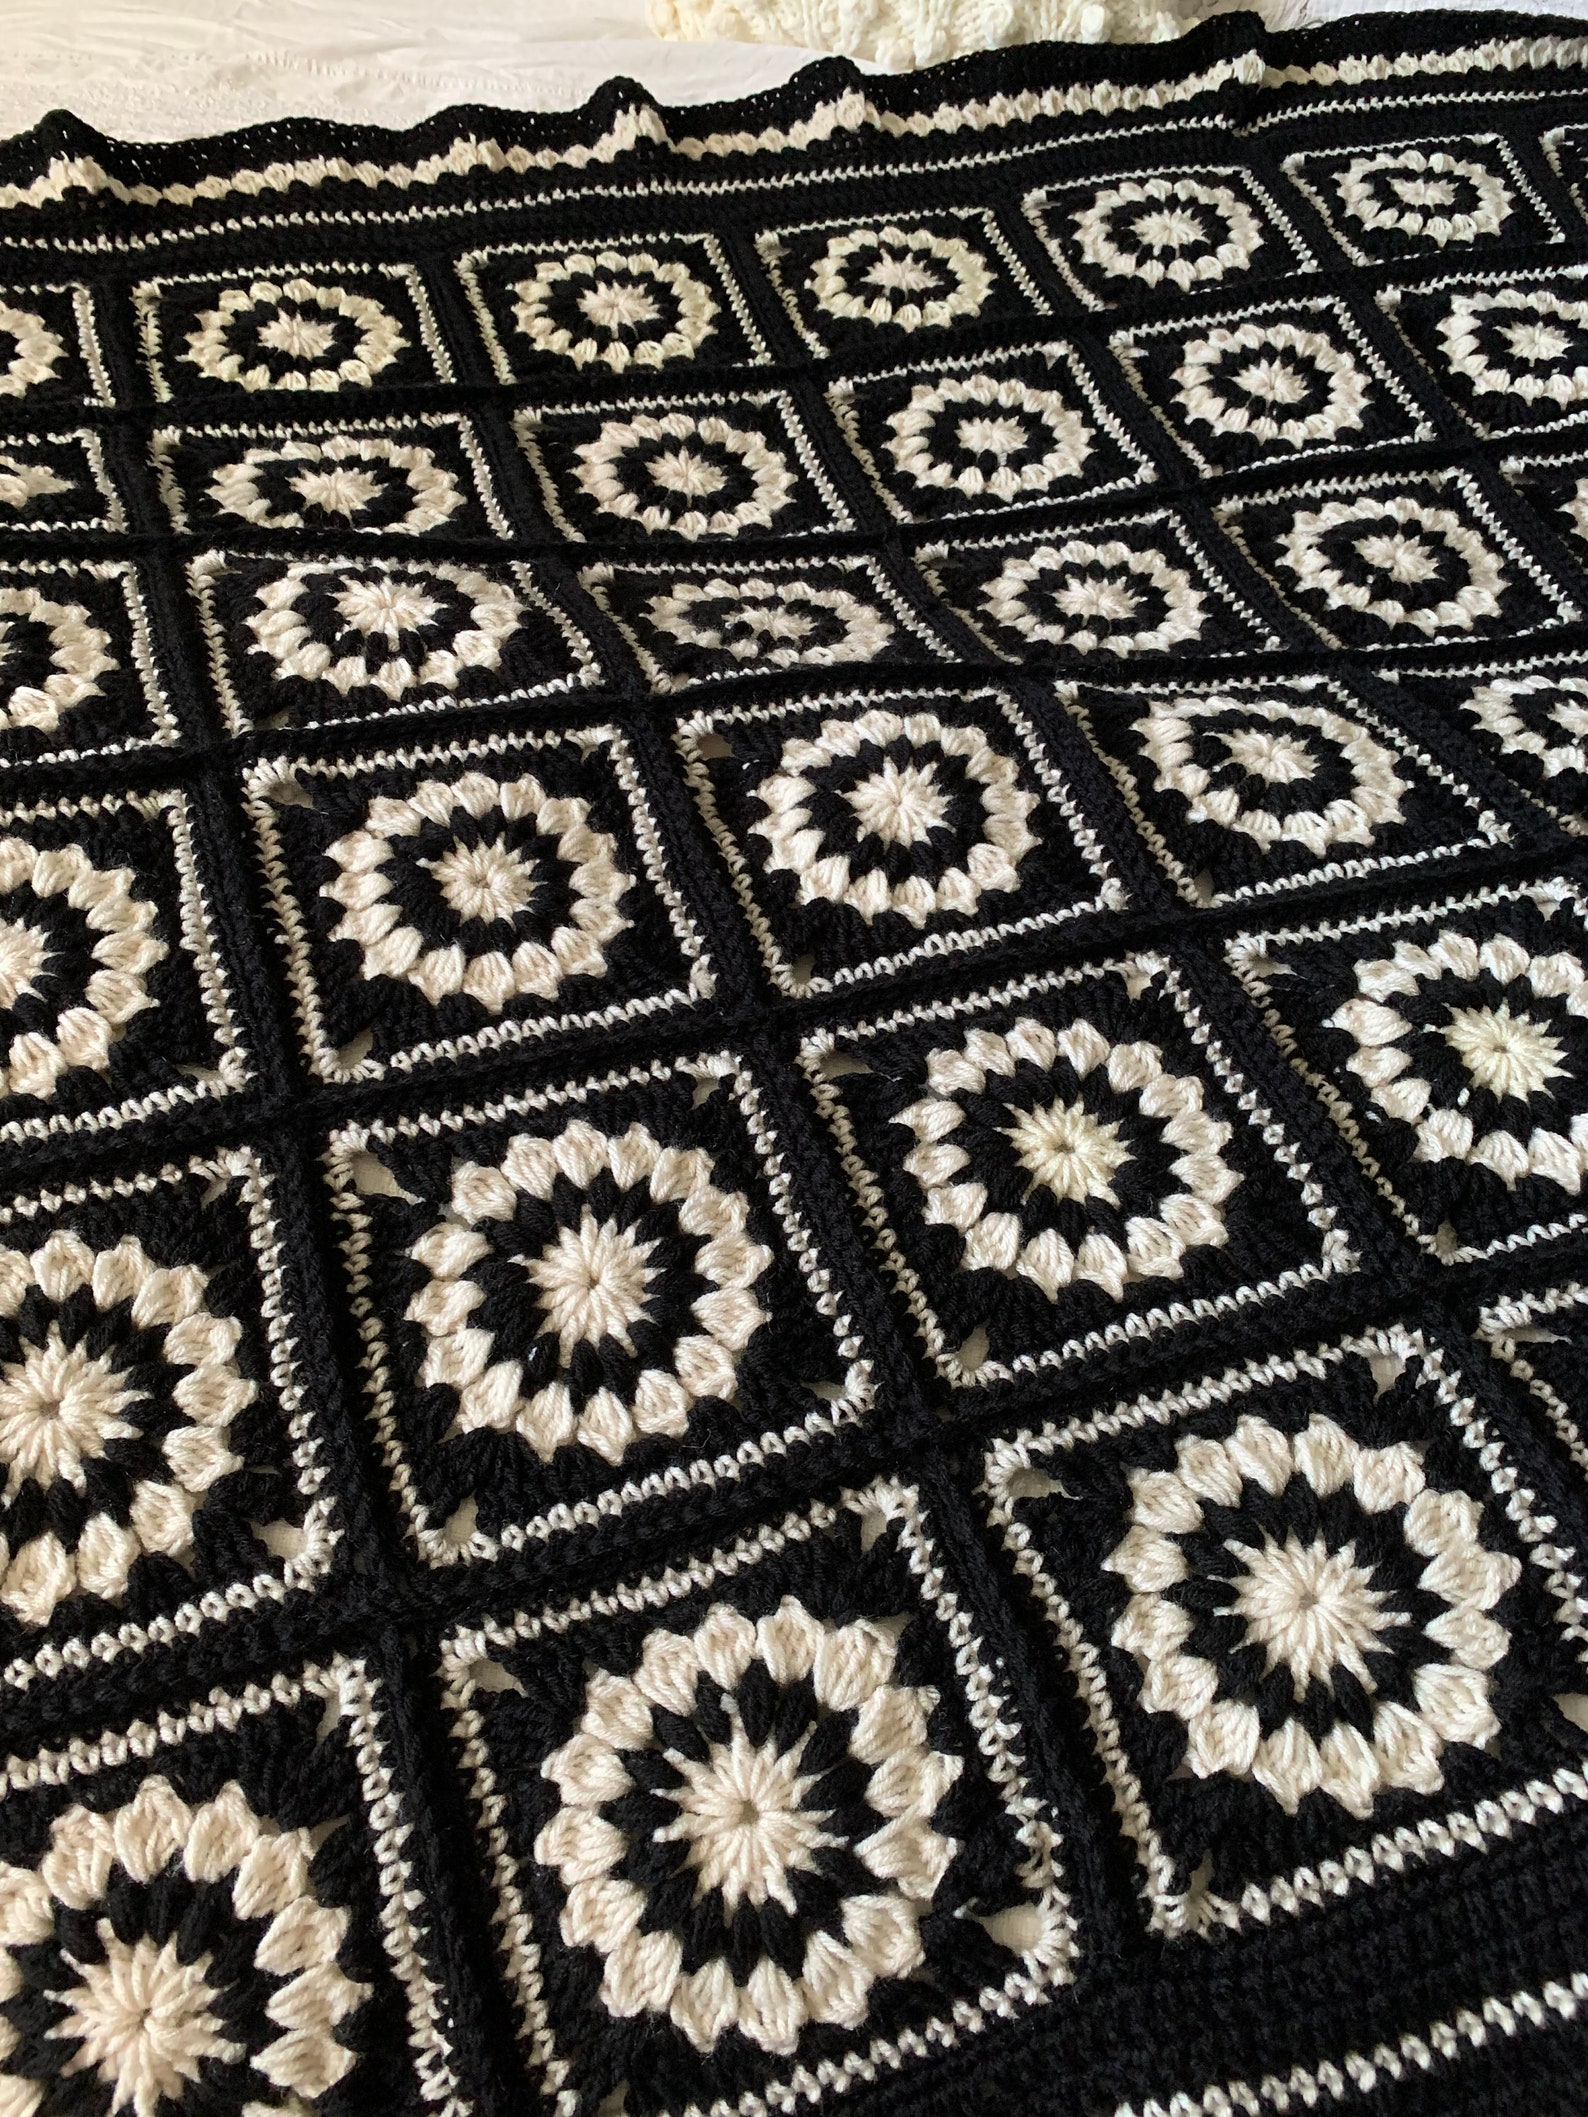 Handmade Crochet Black and White Granny Square Blanket Throw - Etsy